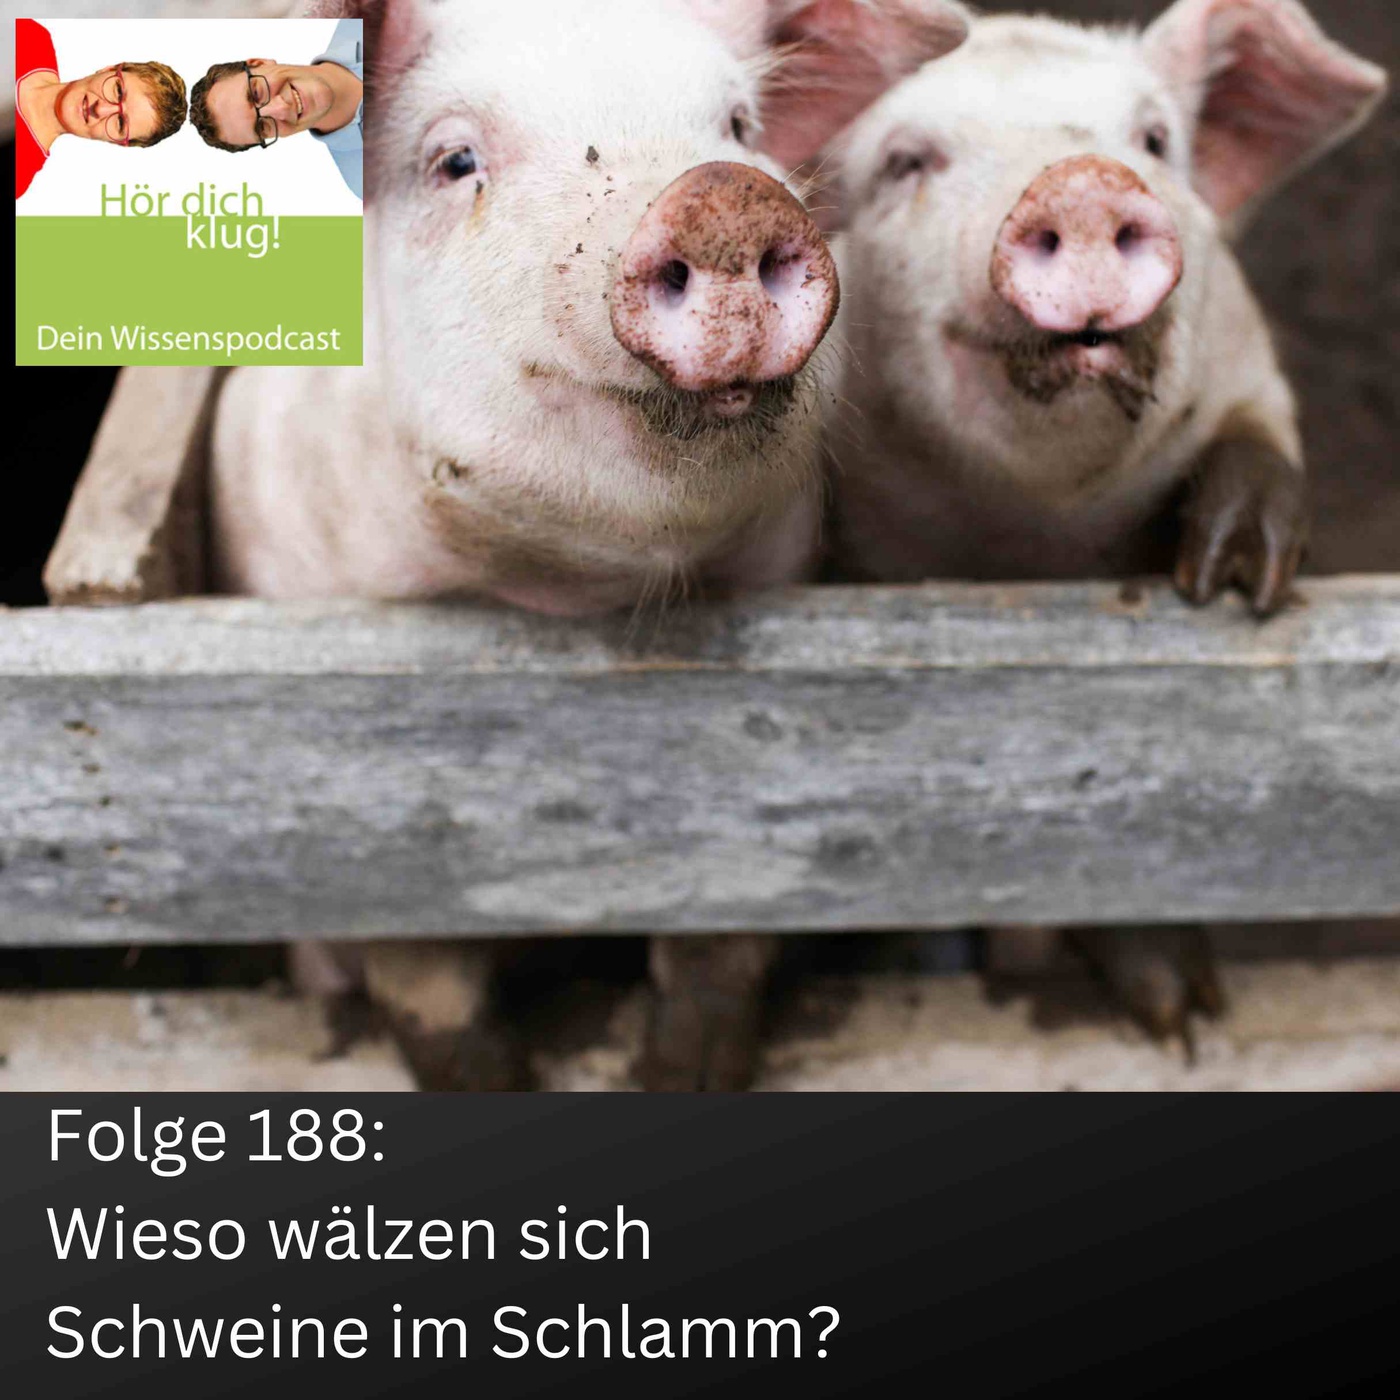 Wieso wälzen sich Schweine im Schlamm?